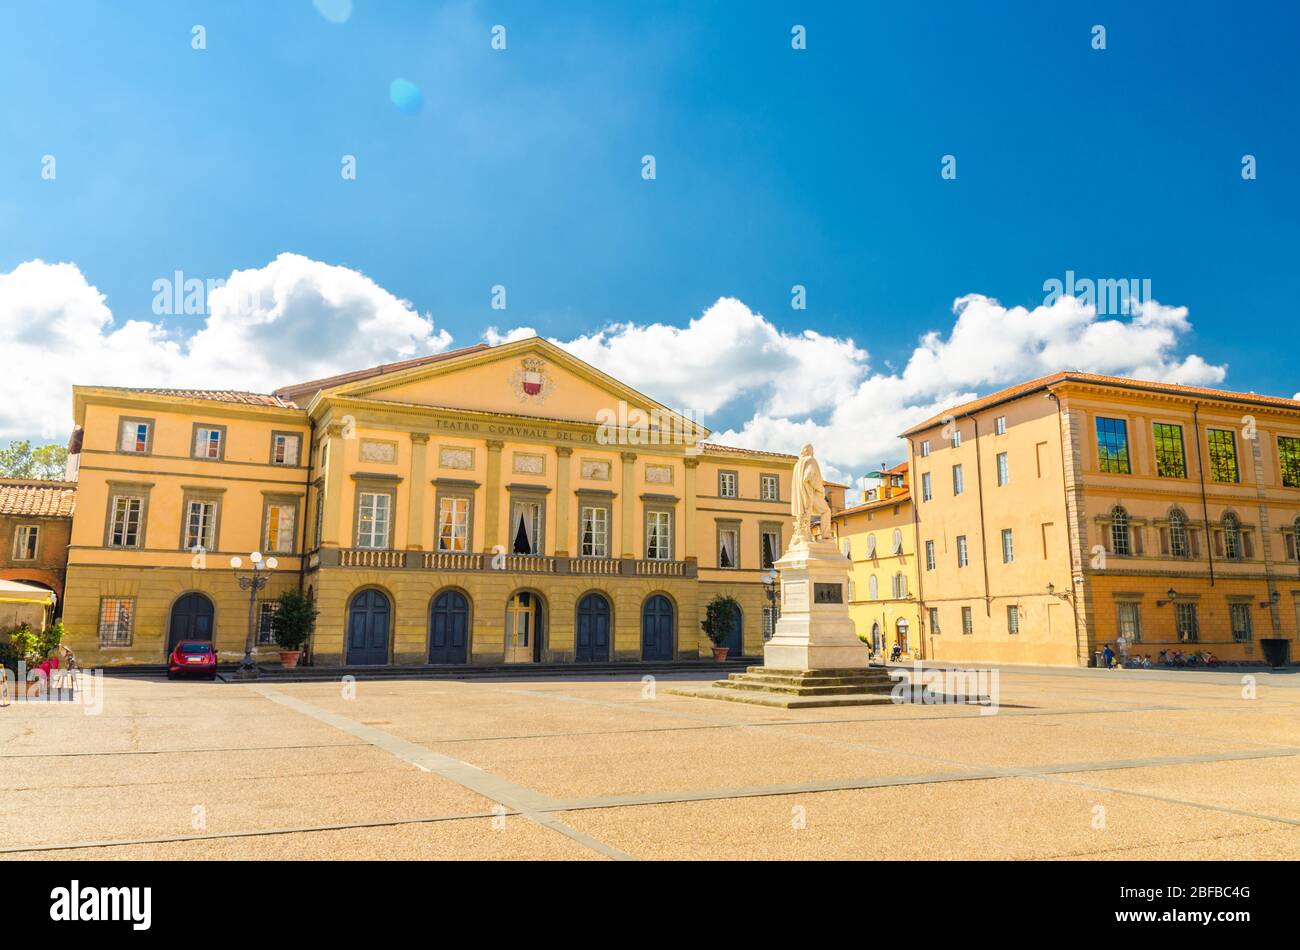 Teatro del Giglio edificio teatro e monumento in Piazza del Giglio nel centro storico della città medievale di Lucca in bella giornata estiva con b Foto Stock